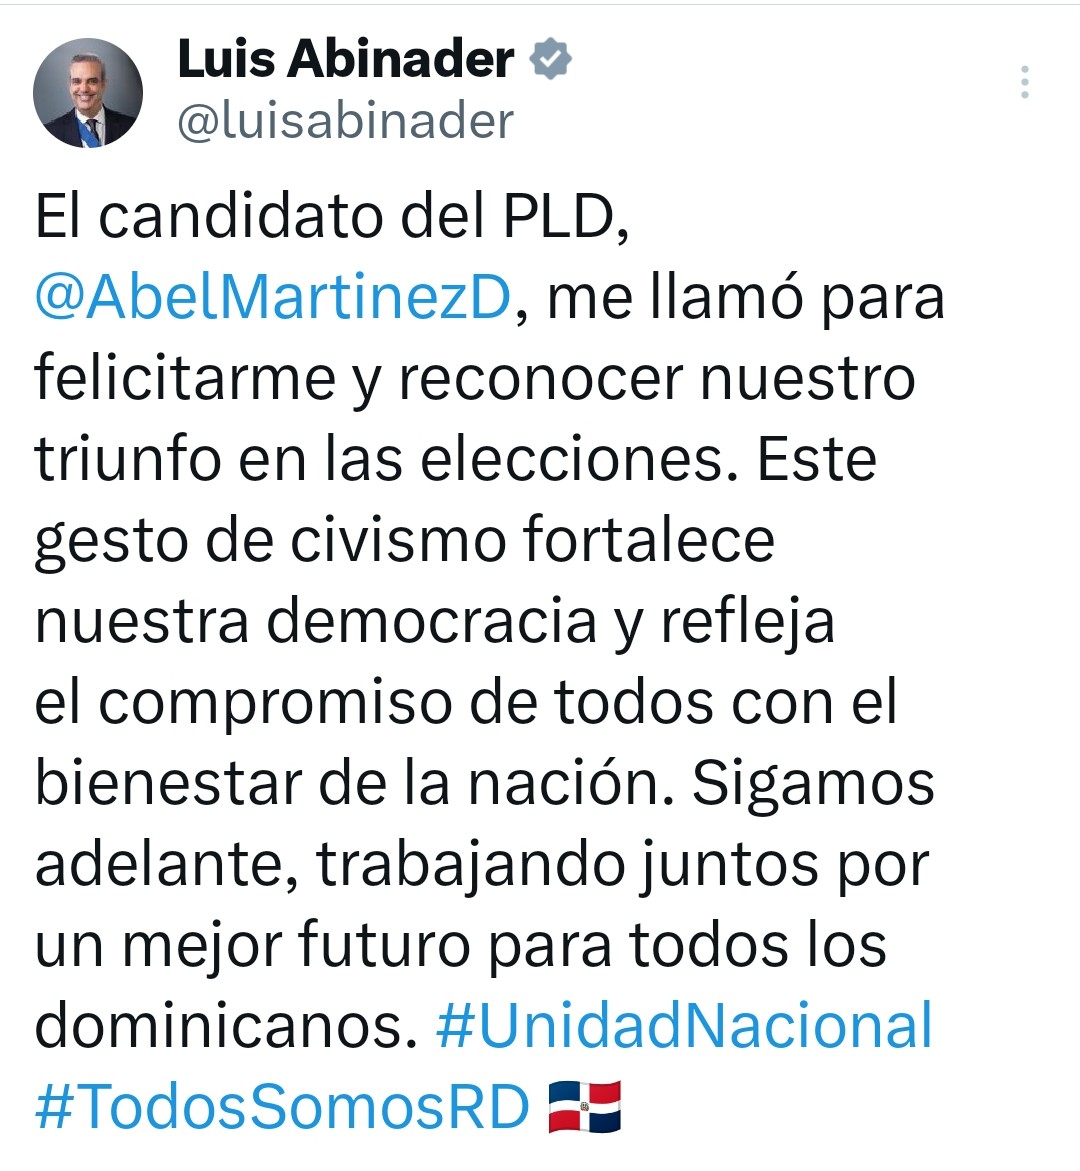 Excelente, no esperaba menos del candidato del @PLDenlinea @AbelMartinezD. Felicidades, presidente @luisabinader